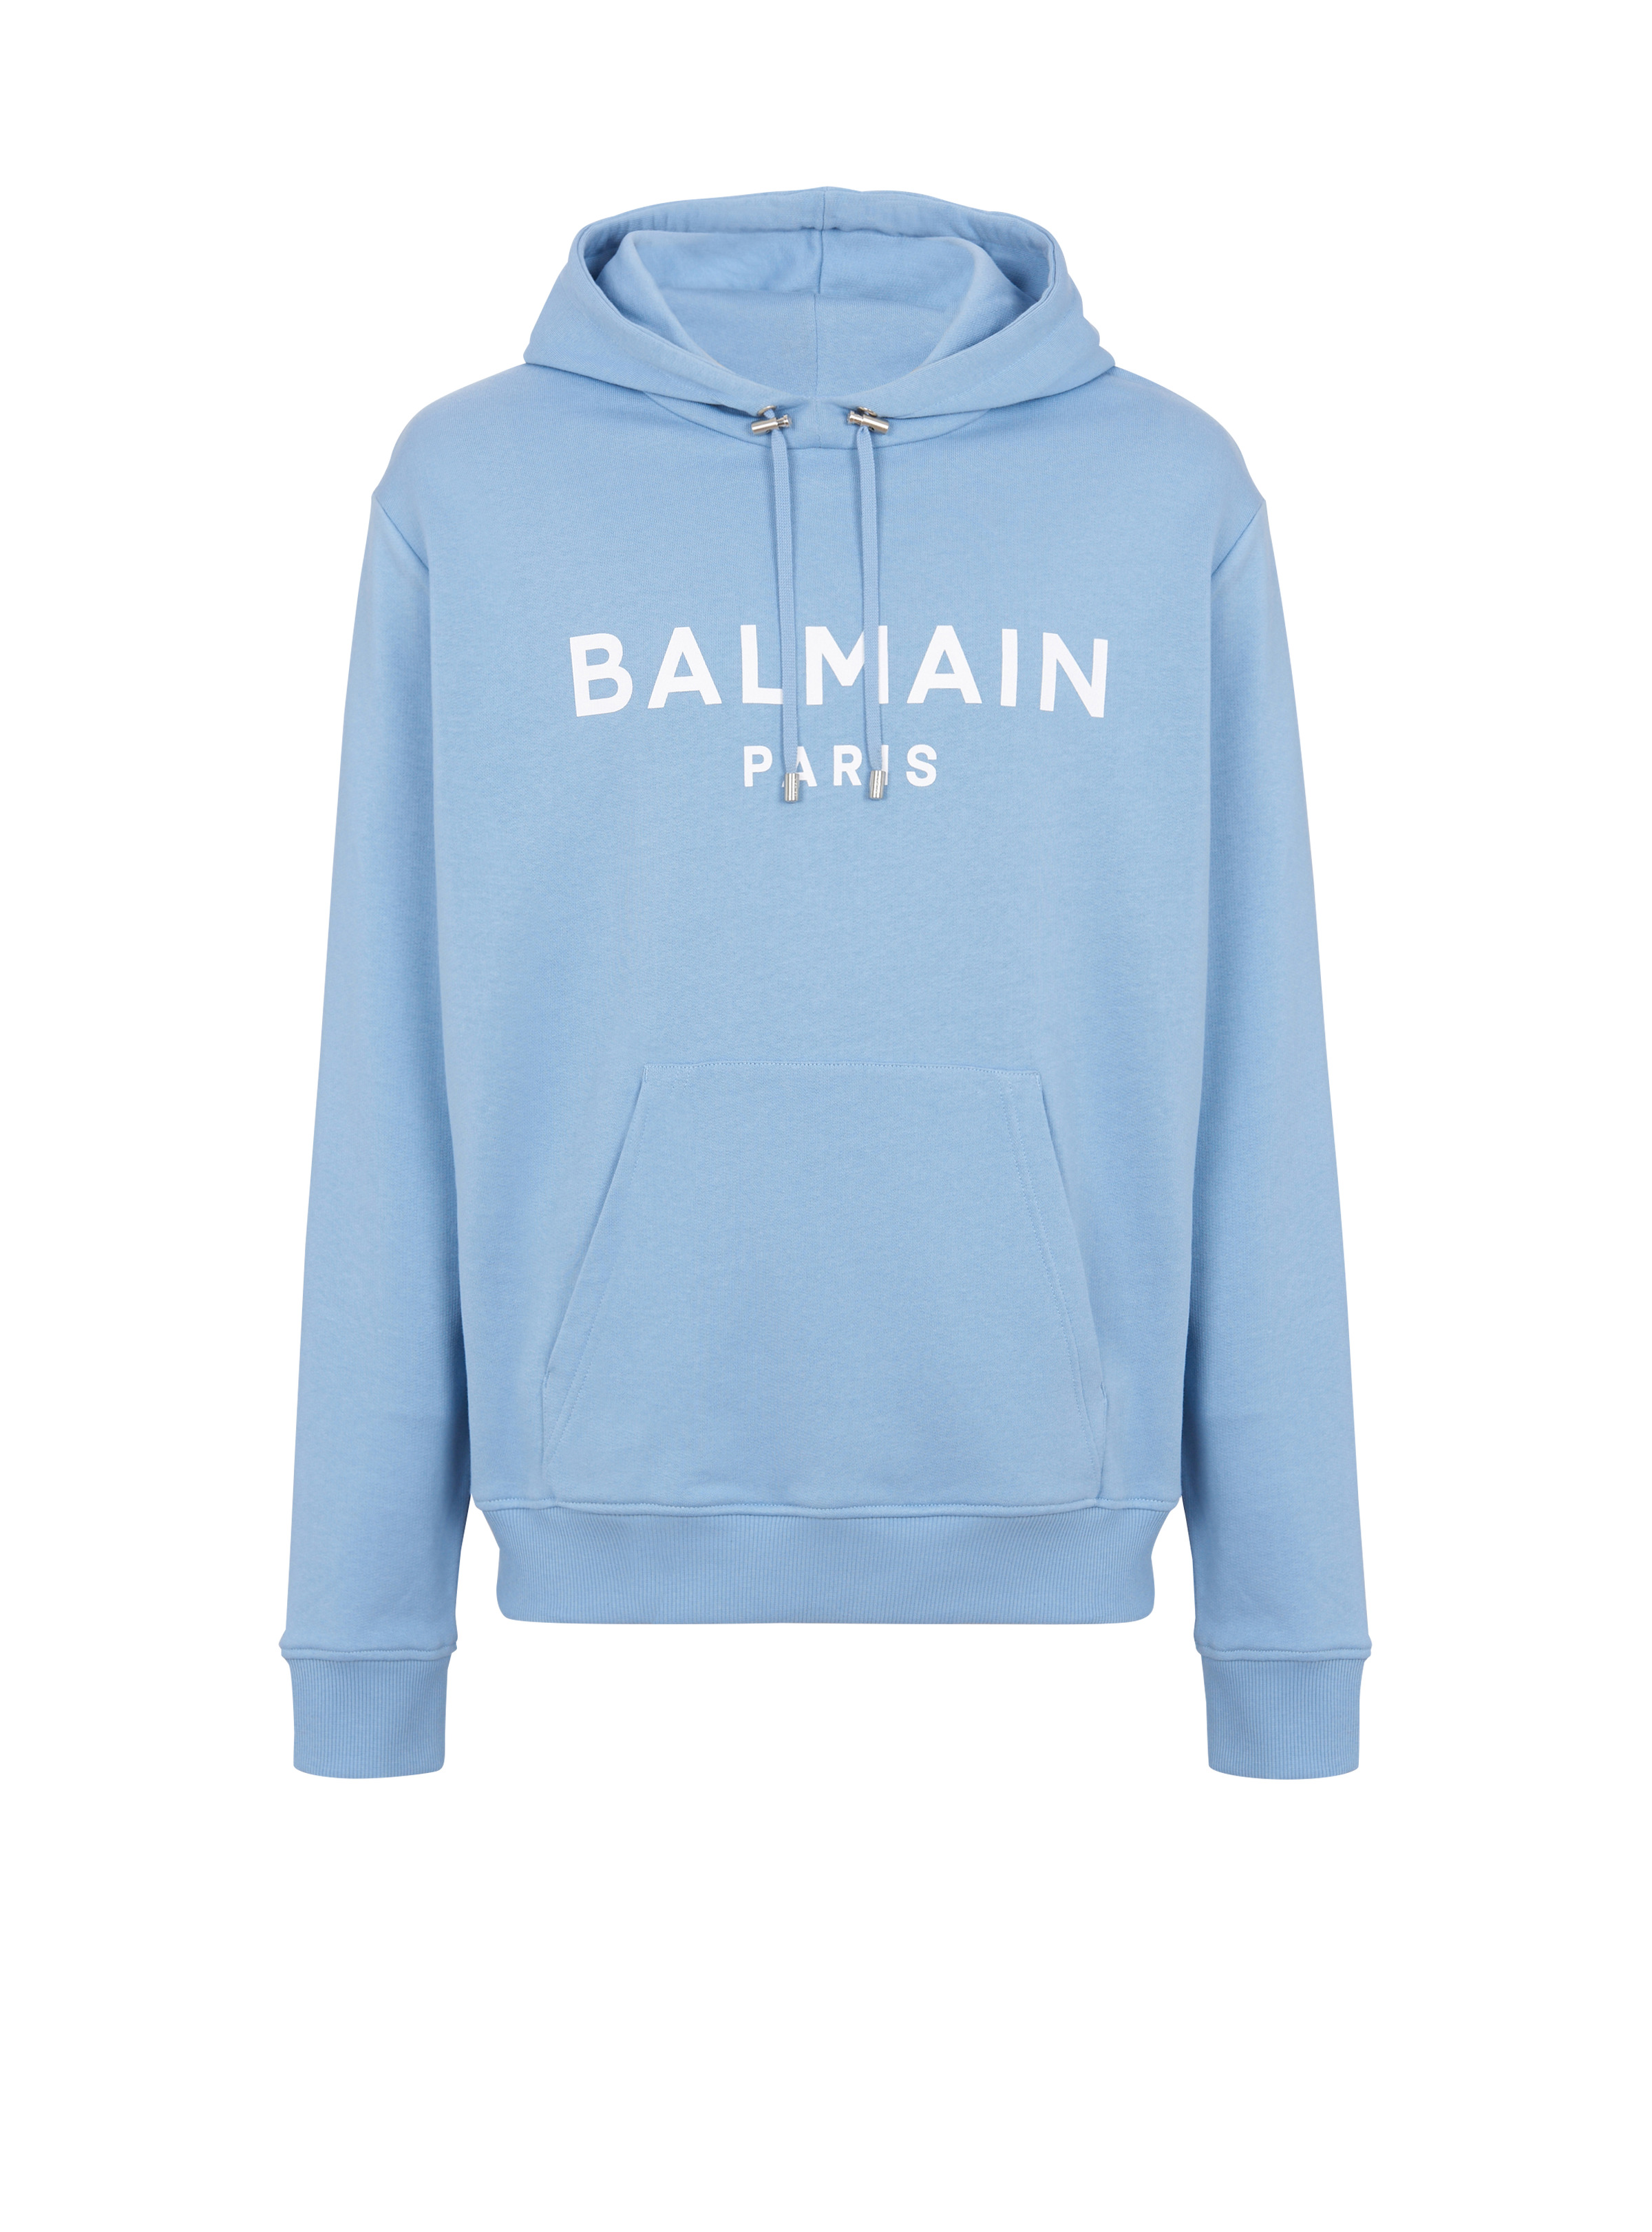 Balmain Paris hoodie - 1